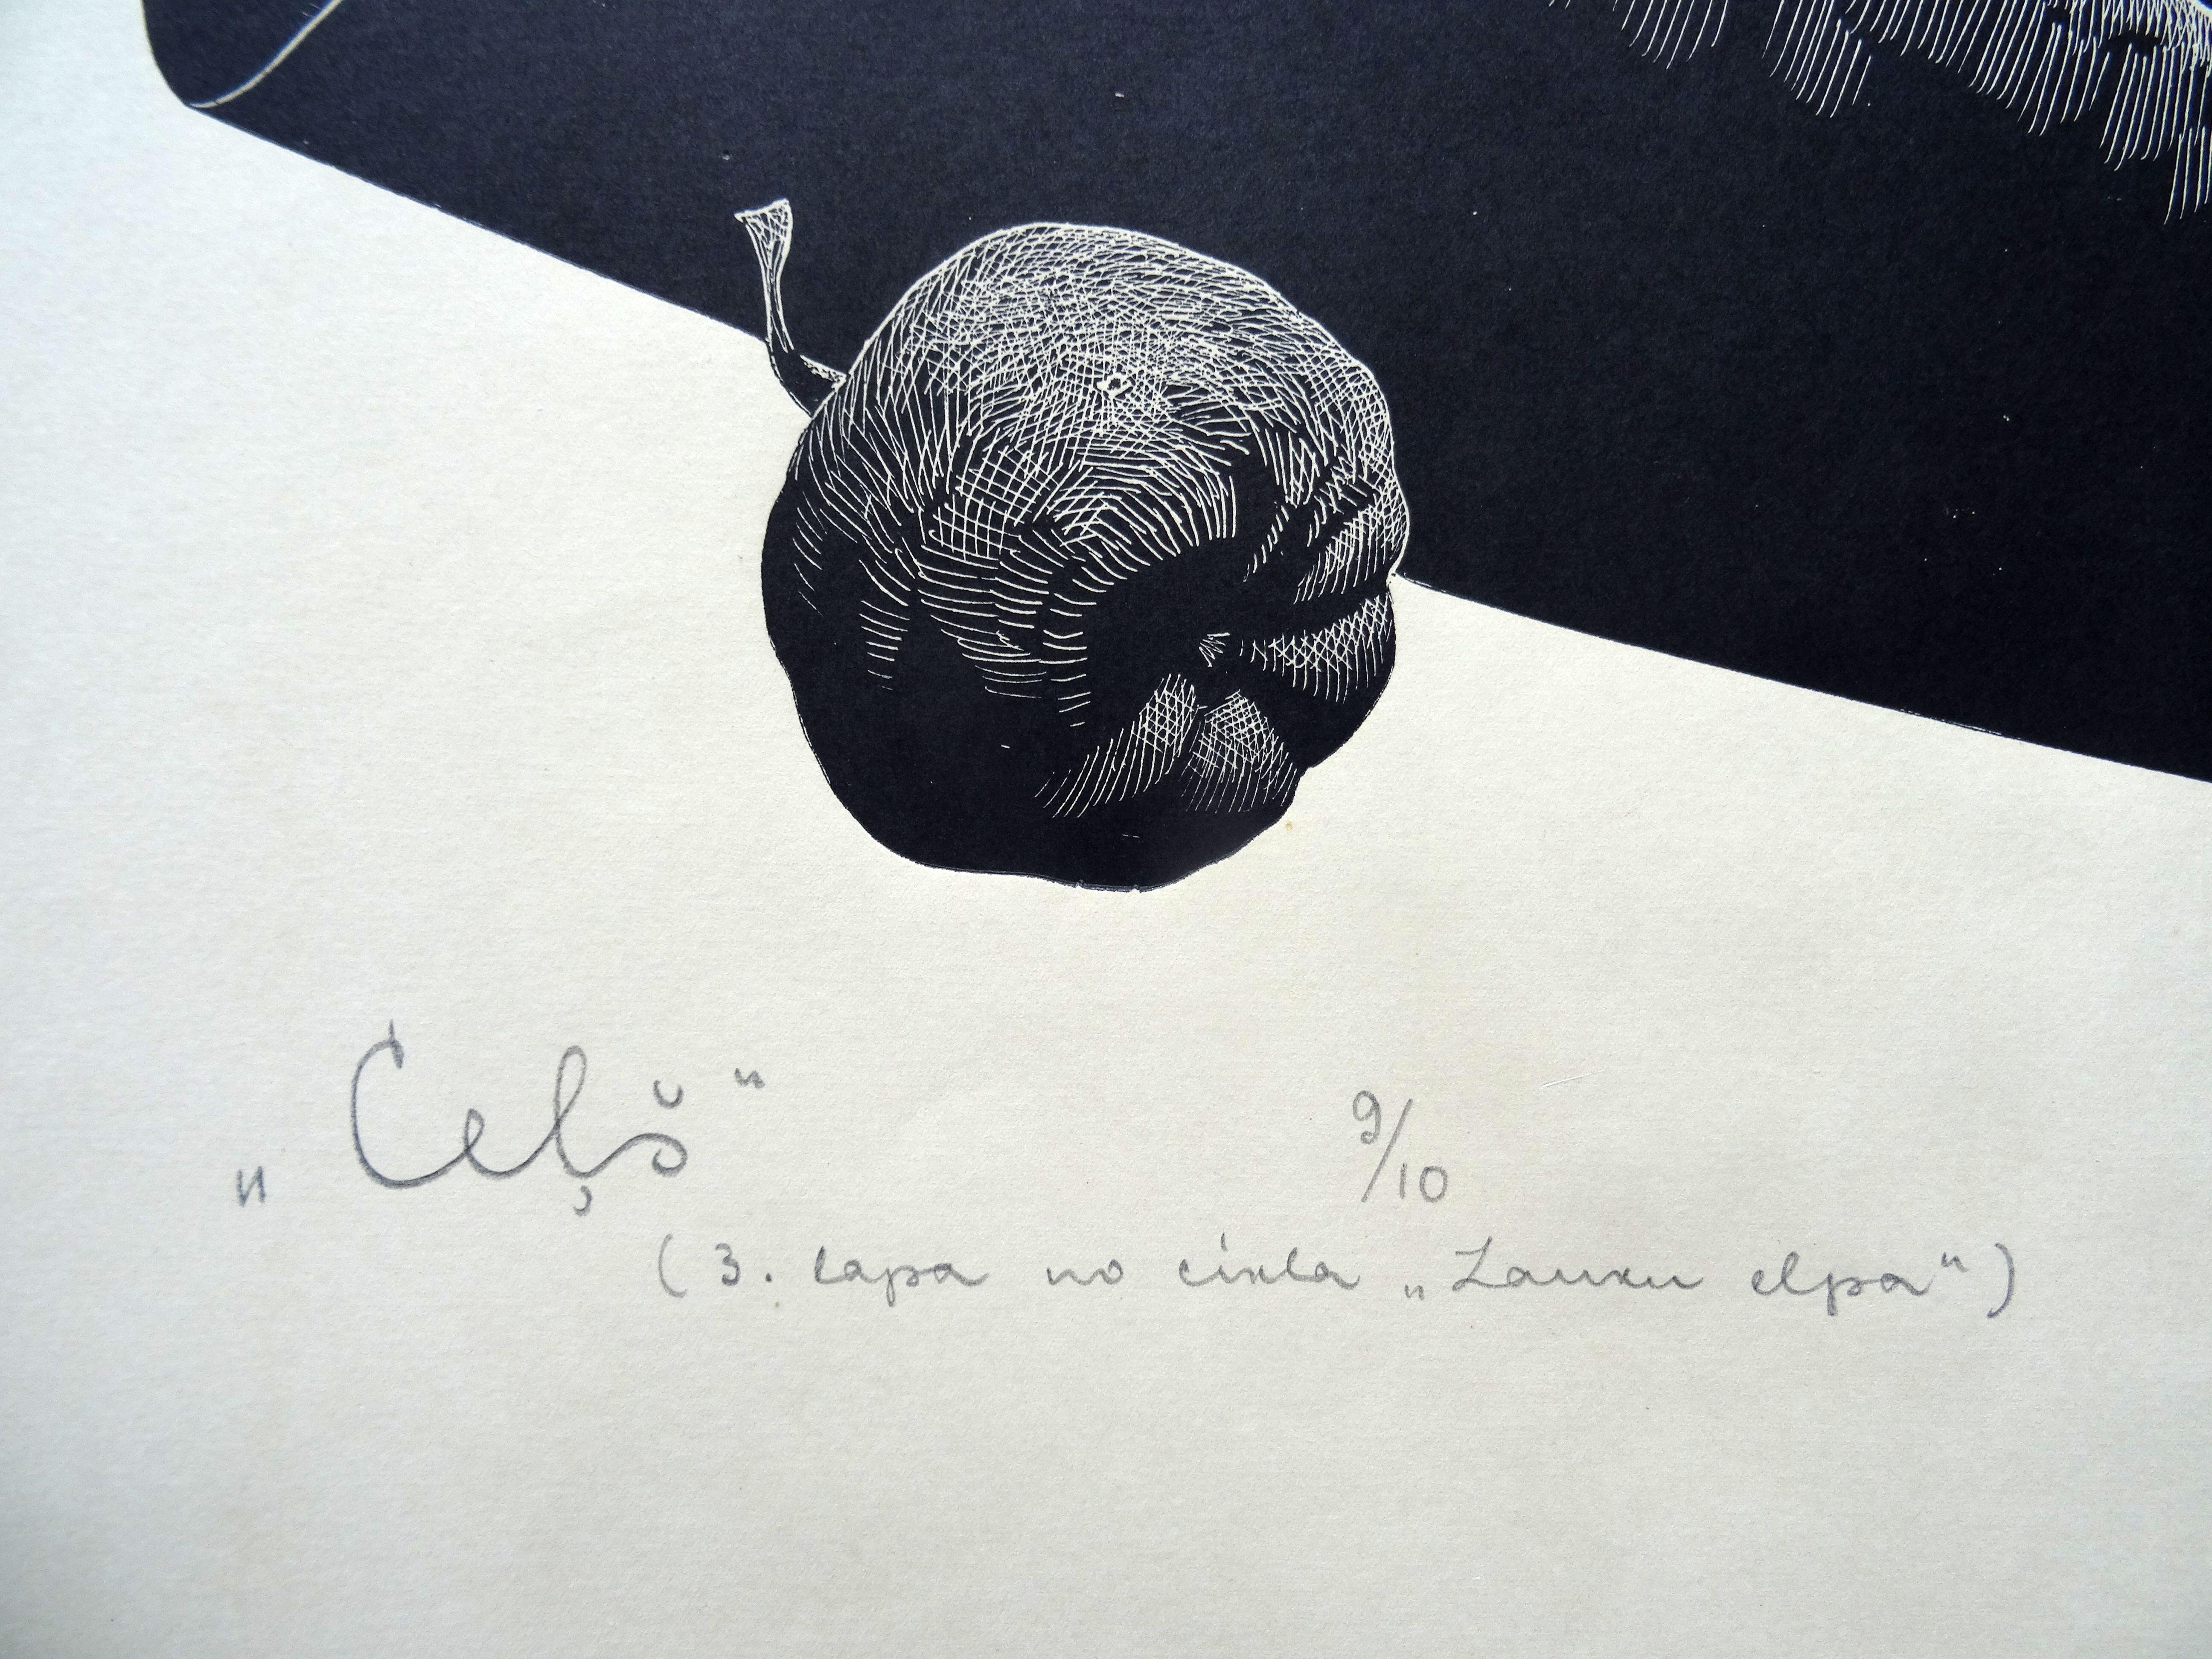 Weg. 1976, Linolschnitt, Druckgröße 65x50 cm; insgesamt 75x60 cm (Geometrische Abstraktion), Print, von Dainis Rozkalns